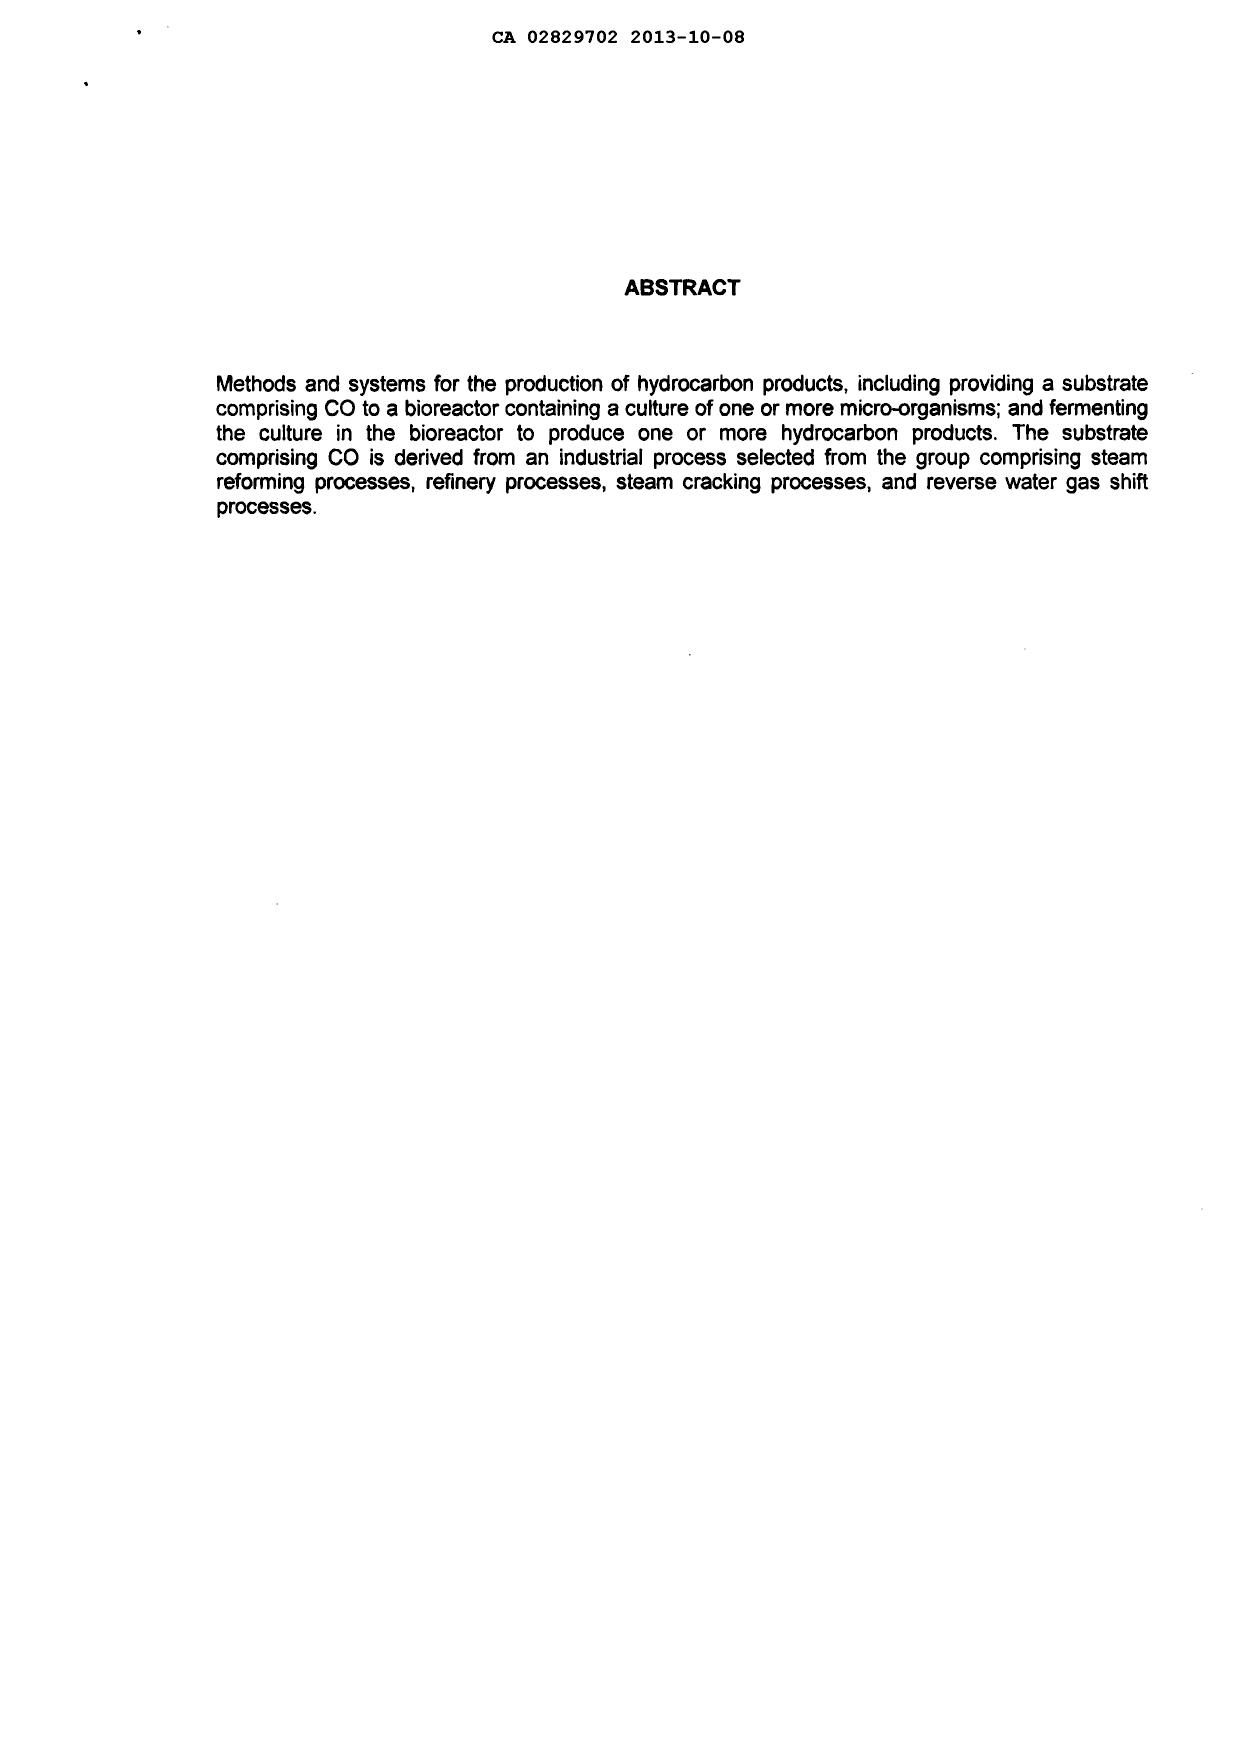 Document de brevet canadien 2829702. Abrégé 20131008. Image 1 de 1